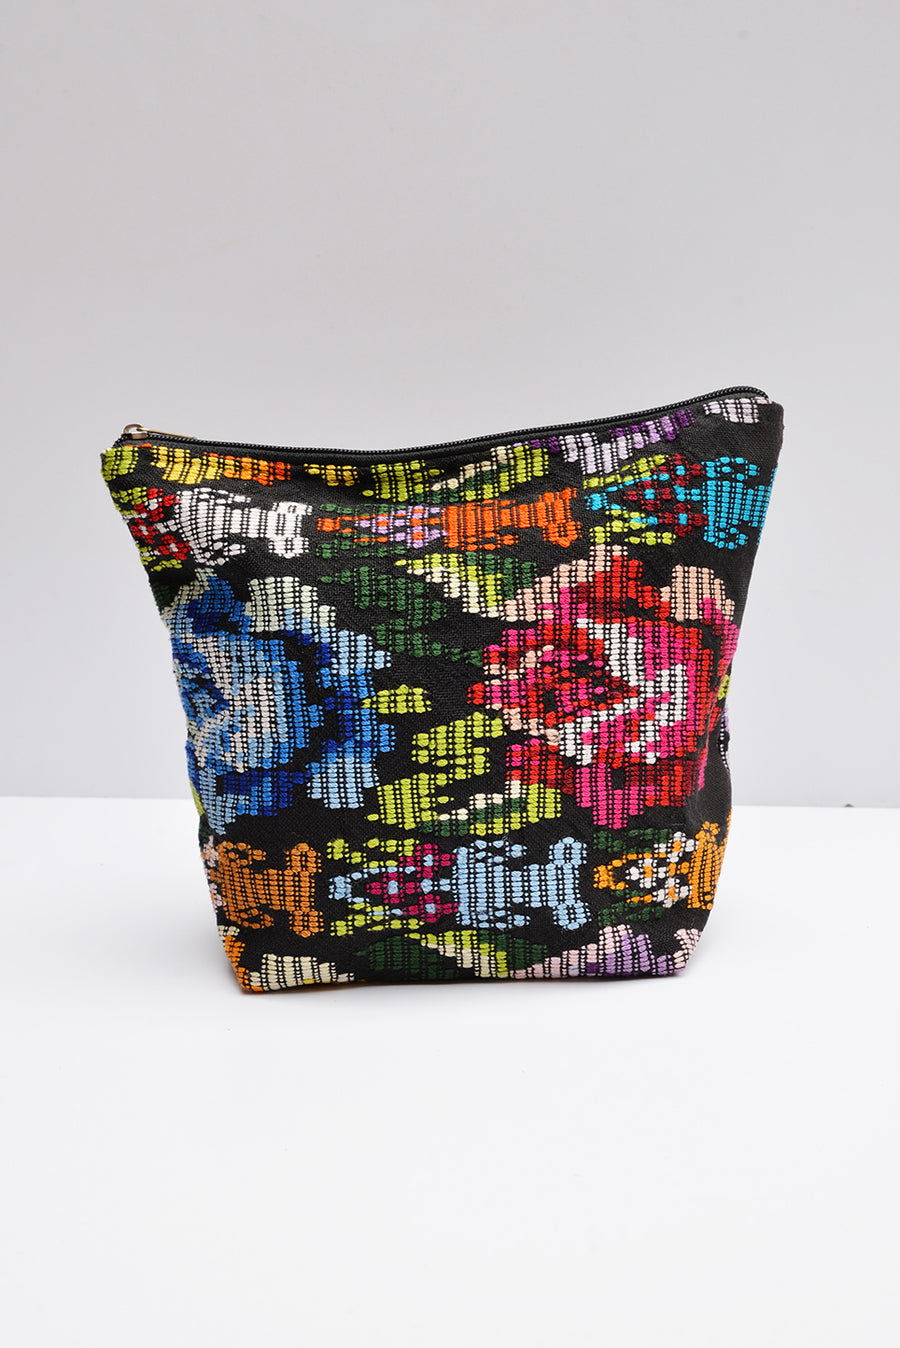 Trama Textiles - Upcycled Beauty Bag - Vernal Huipil